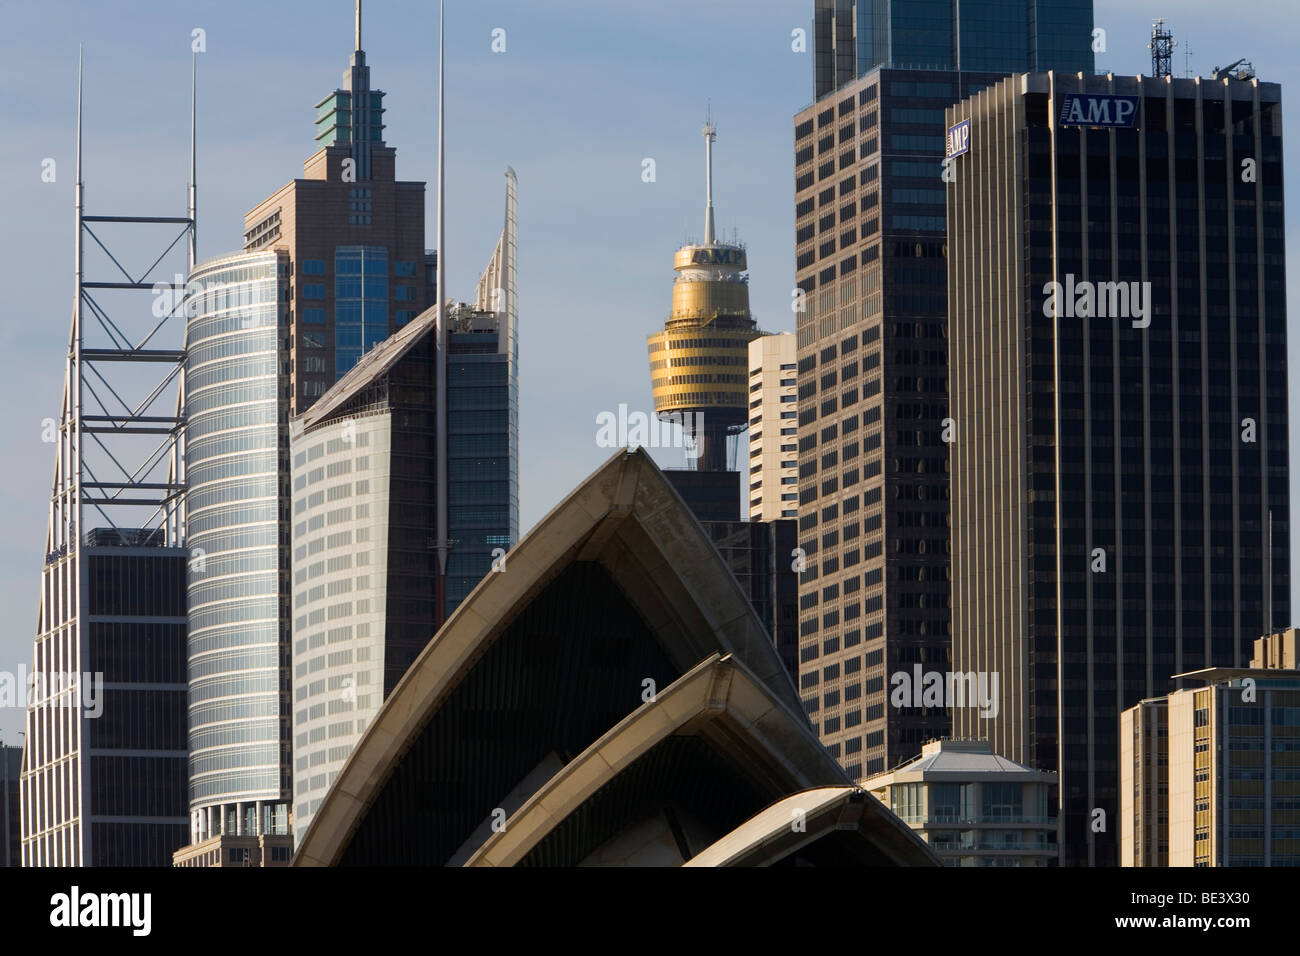 L'architecture iconique de l'Opéra de Sydney et sur la ville. Sydney, New South Wales, Australia Banque D'Images